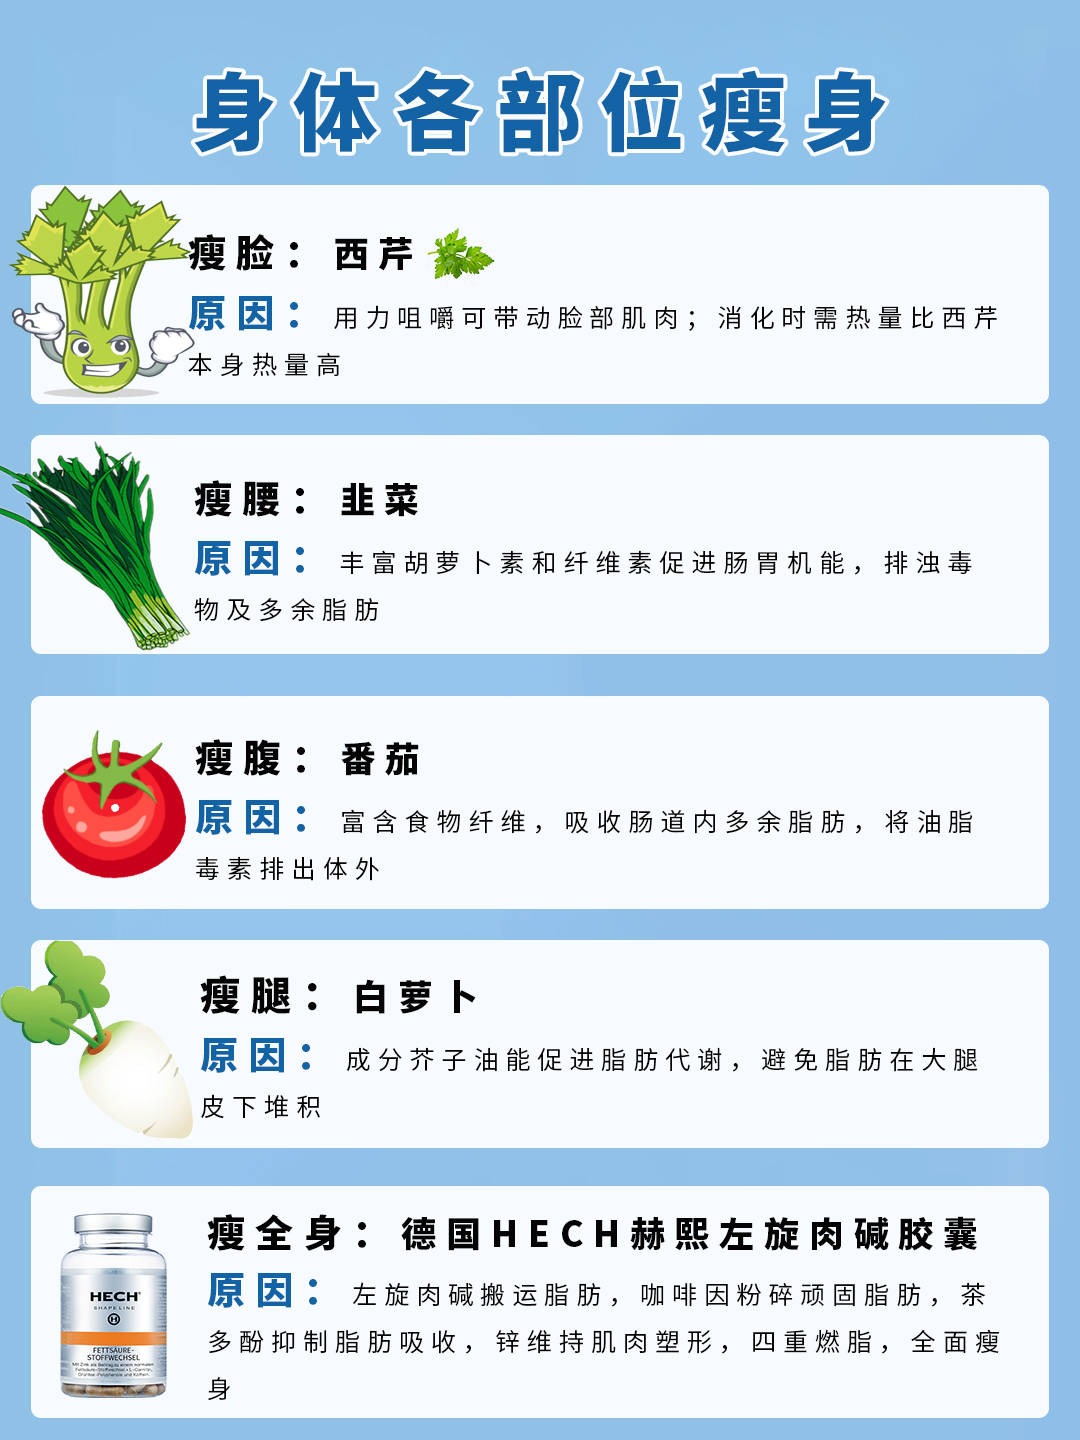 原创减脂蔬菜热量表《百科大全》——照着吃,不会错!